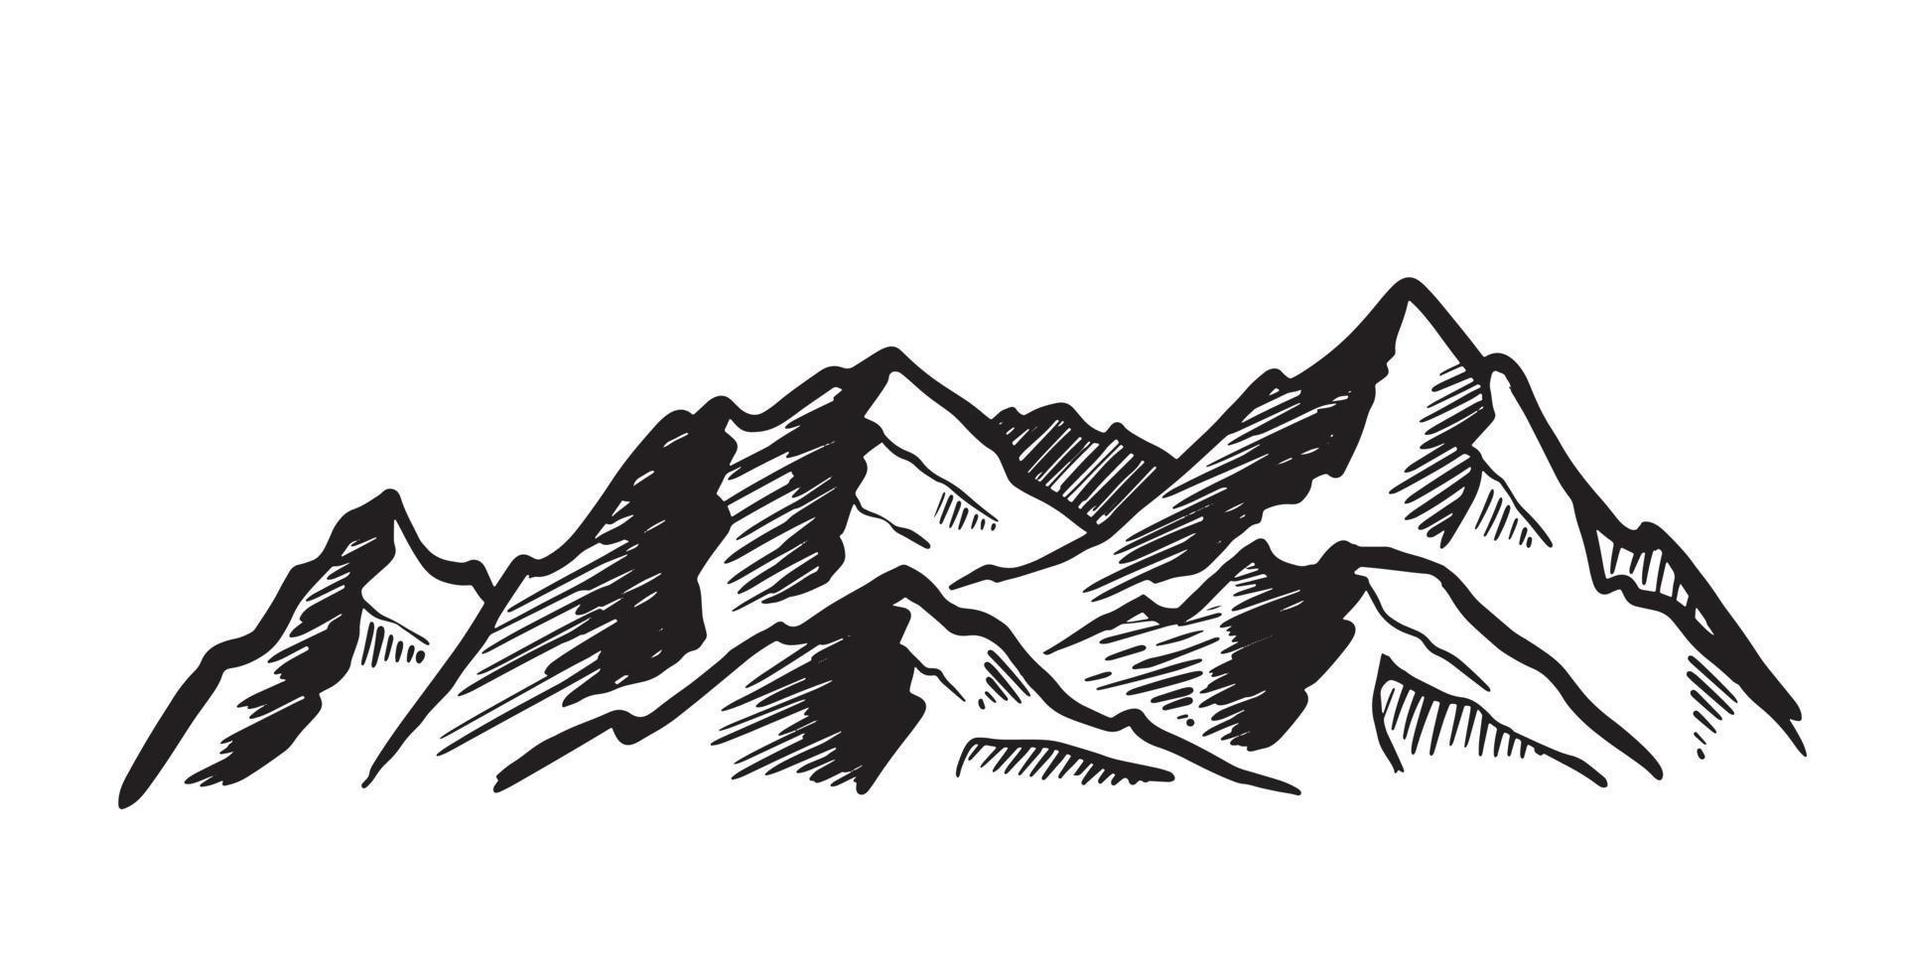 paisaje de montaña, ilustración dibujada a mano vector